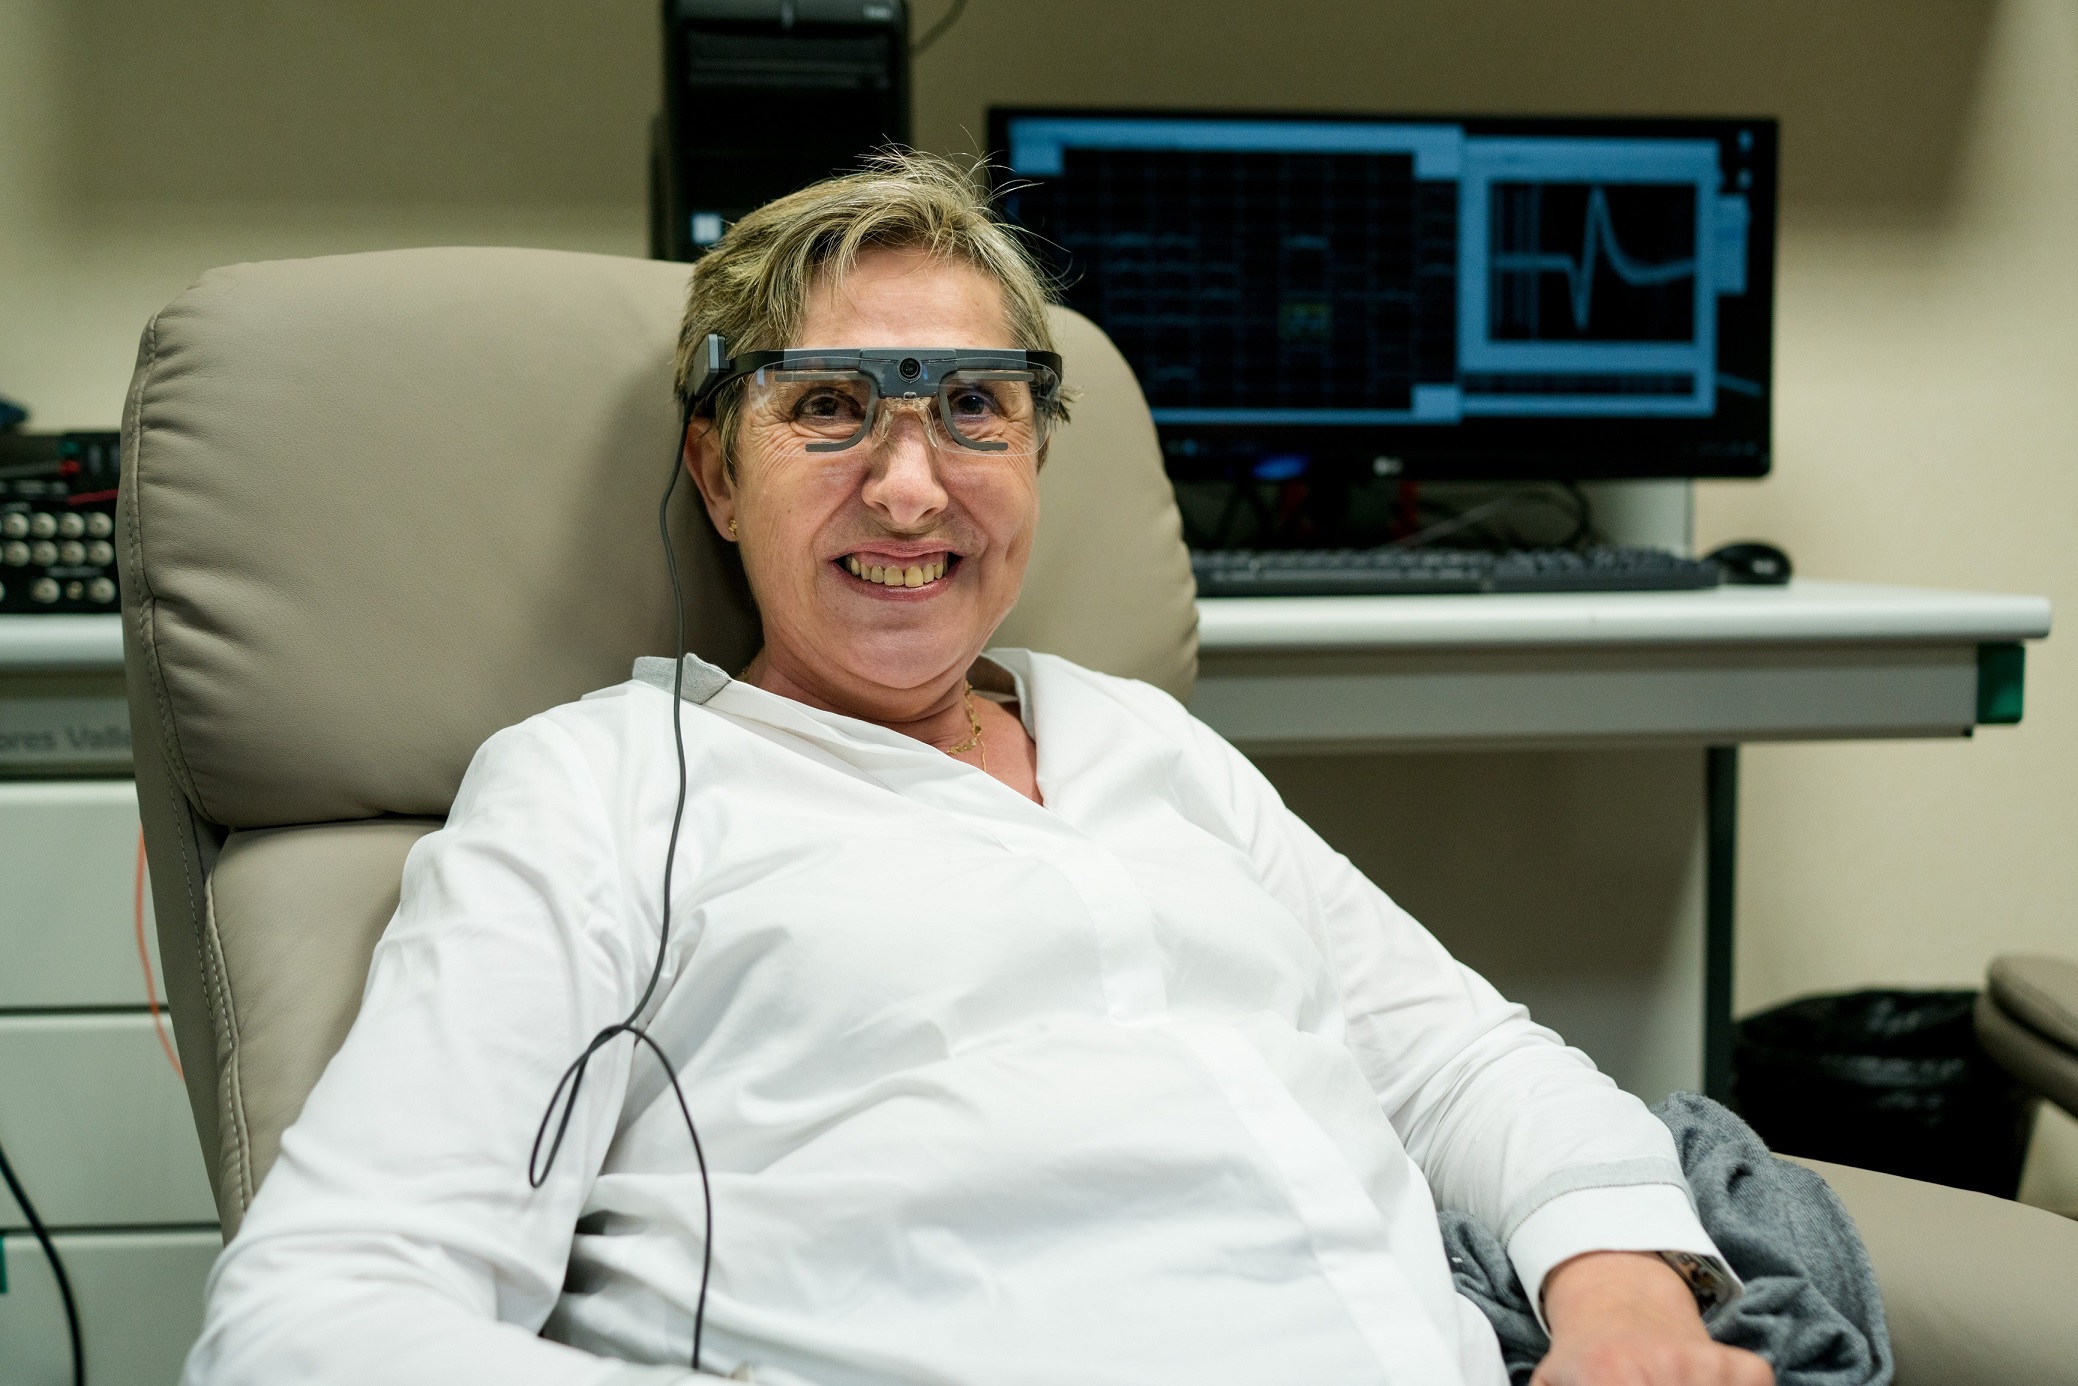 Szemek nélküli látást tesz lehetővé egy új agyi implantátum